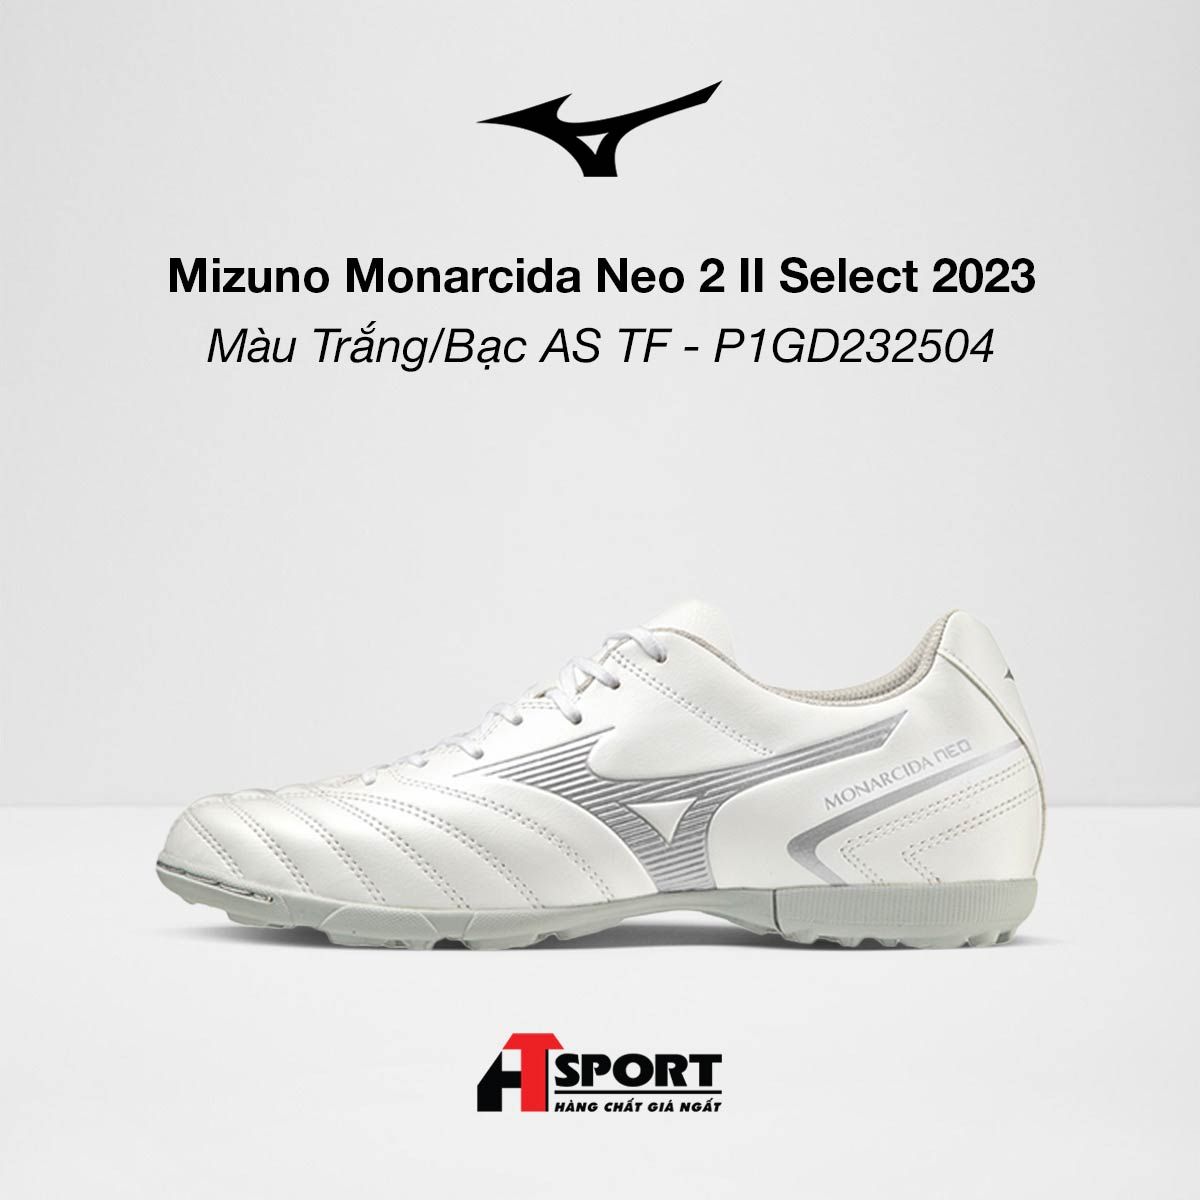  Mizuno Monarcida Neo II Select Màu Trắng/Bạc AS TF 2023 - P1GD232504 